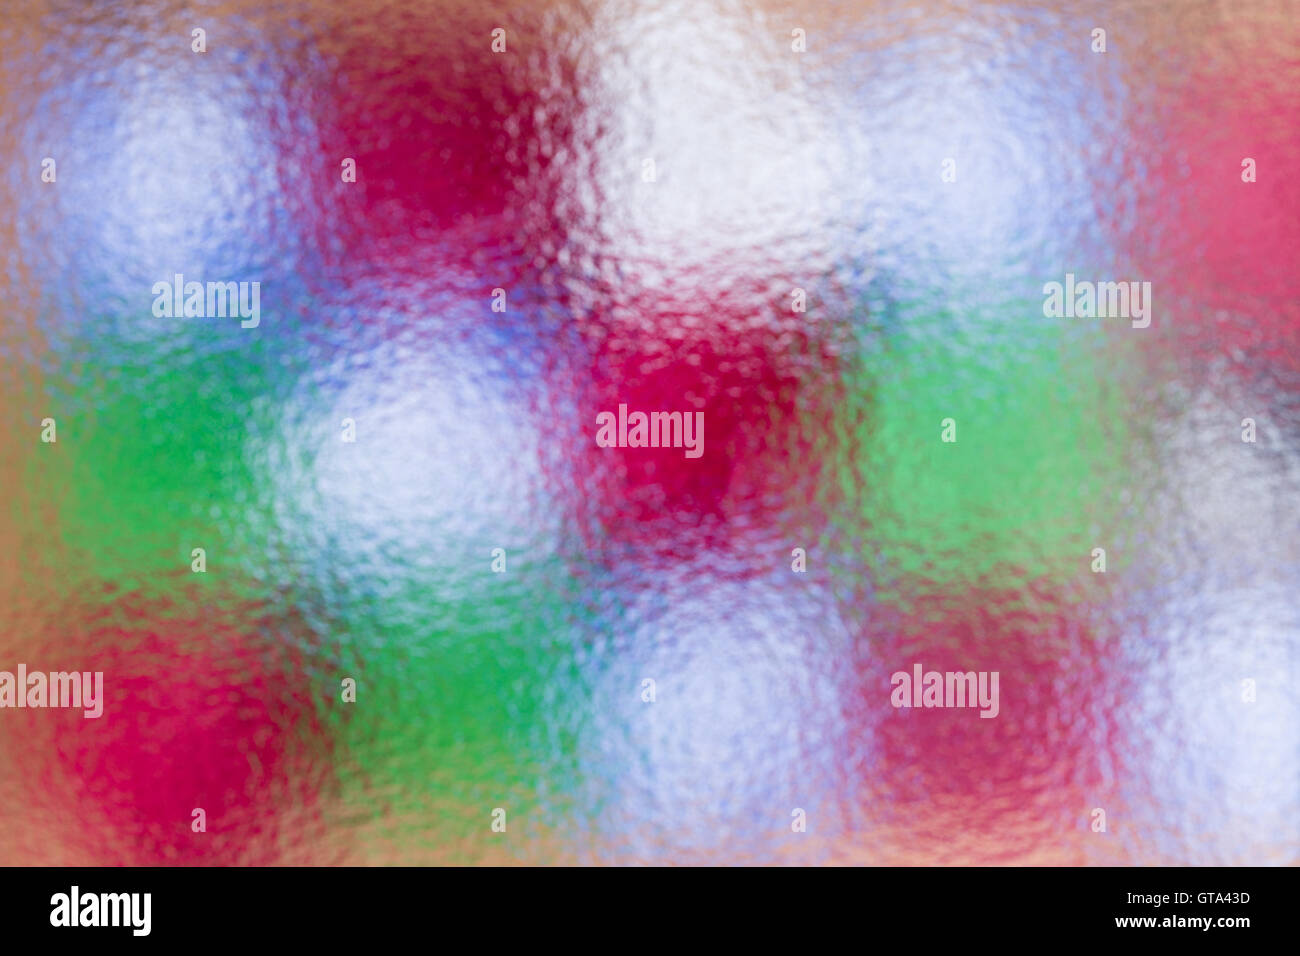 Résumé Contexte de Noël coloré festif d'un arrangement de cadeaux multicolores en verre dépoli derrière une image complète Banque D'Images